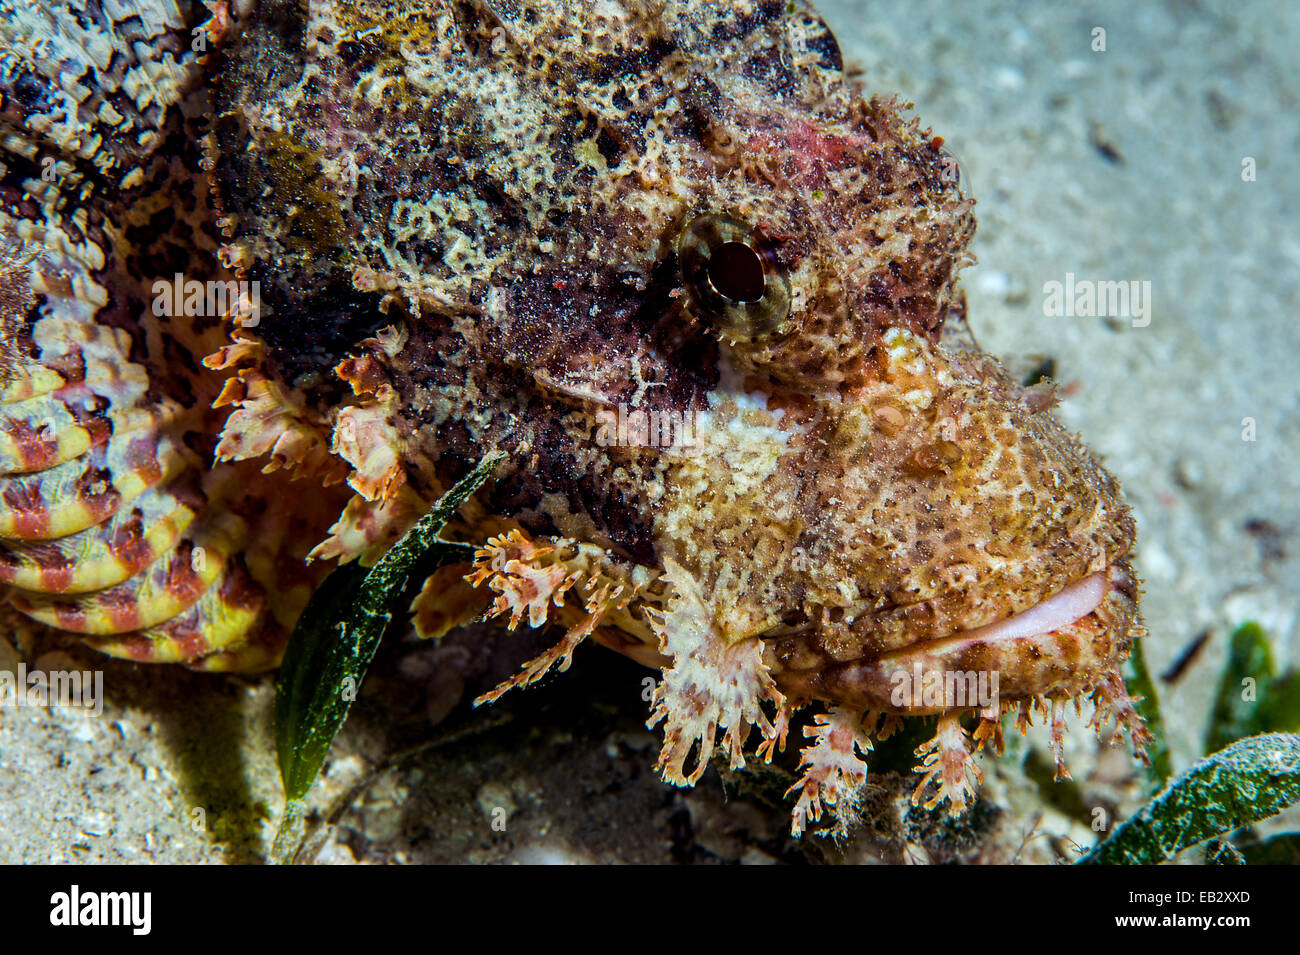 Mosaik-Skalen und Tarnung eine giftige bärtige Drachenköpfe ruht auf dem sandigen Boden in der Nähe von einem Korallenriff. Stockfoto